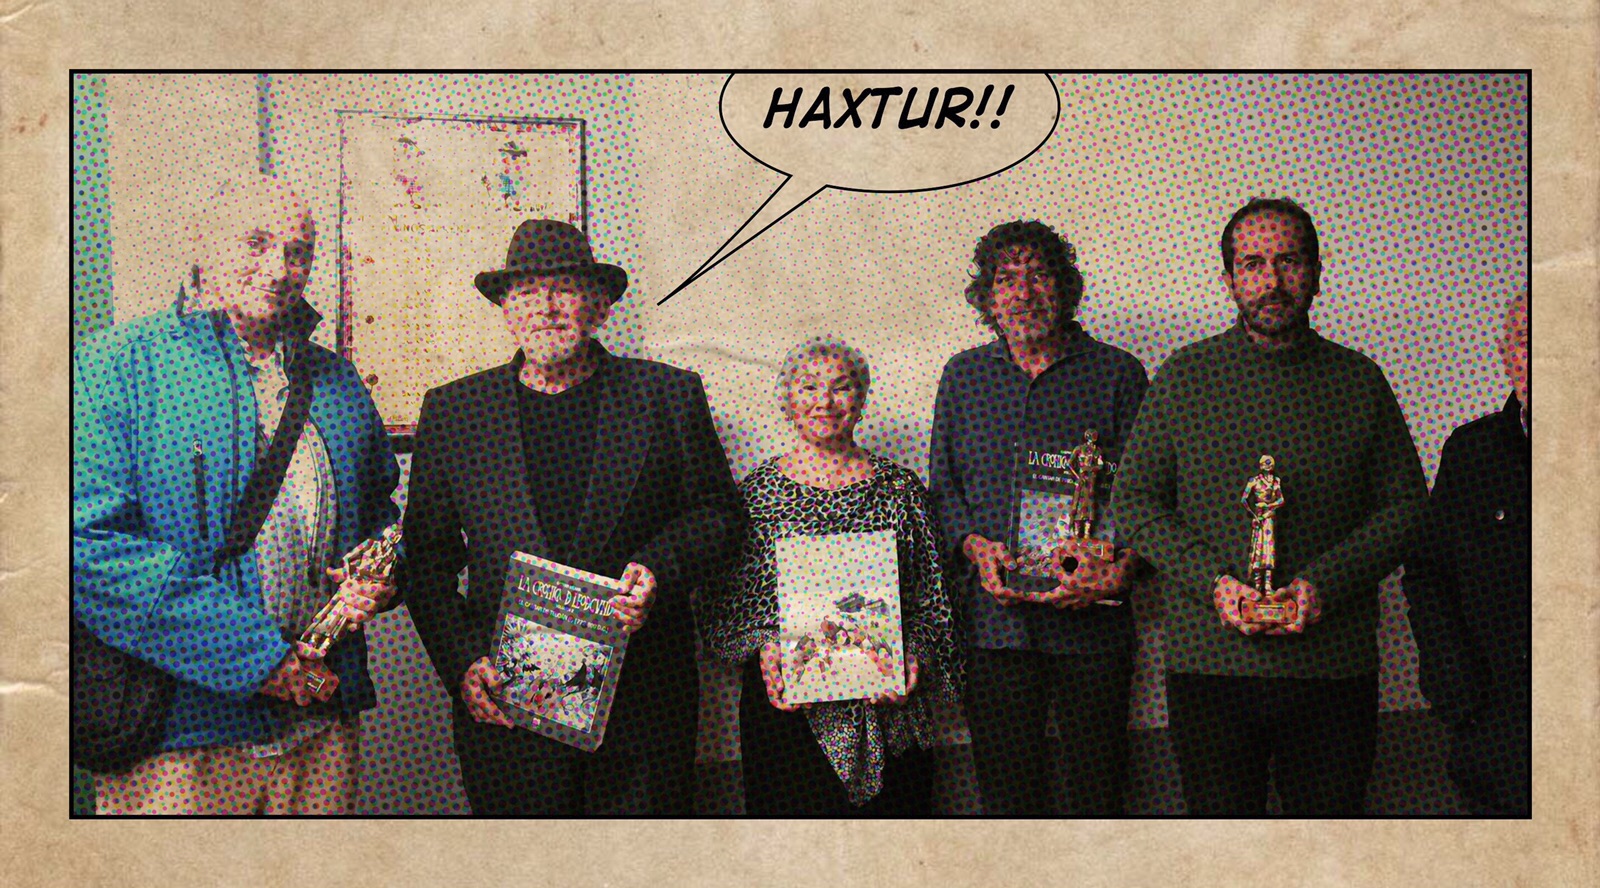 Premi a Edicions UIB per la publicació del còmic "La crónica de Leodegundo" (5 volums) de Gaspar Meana